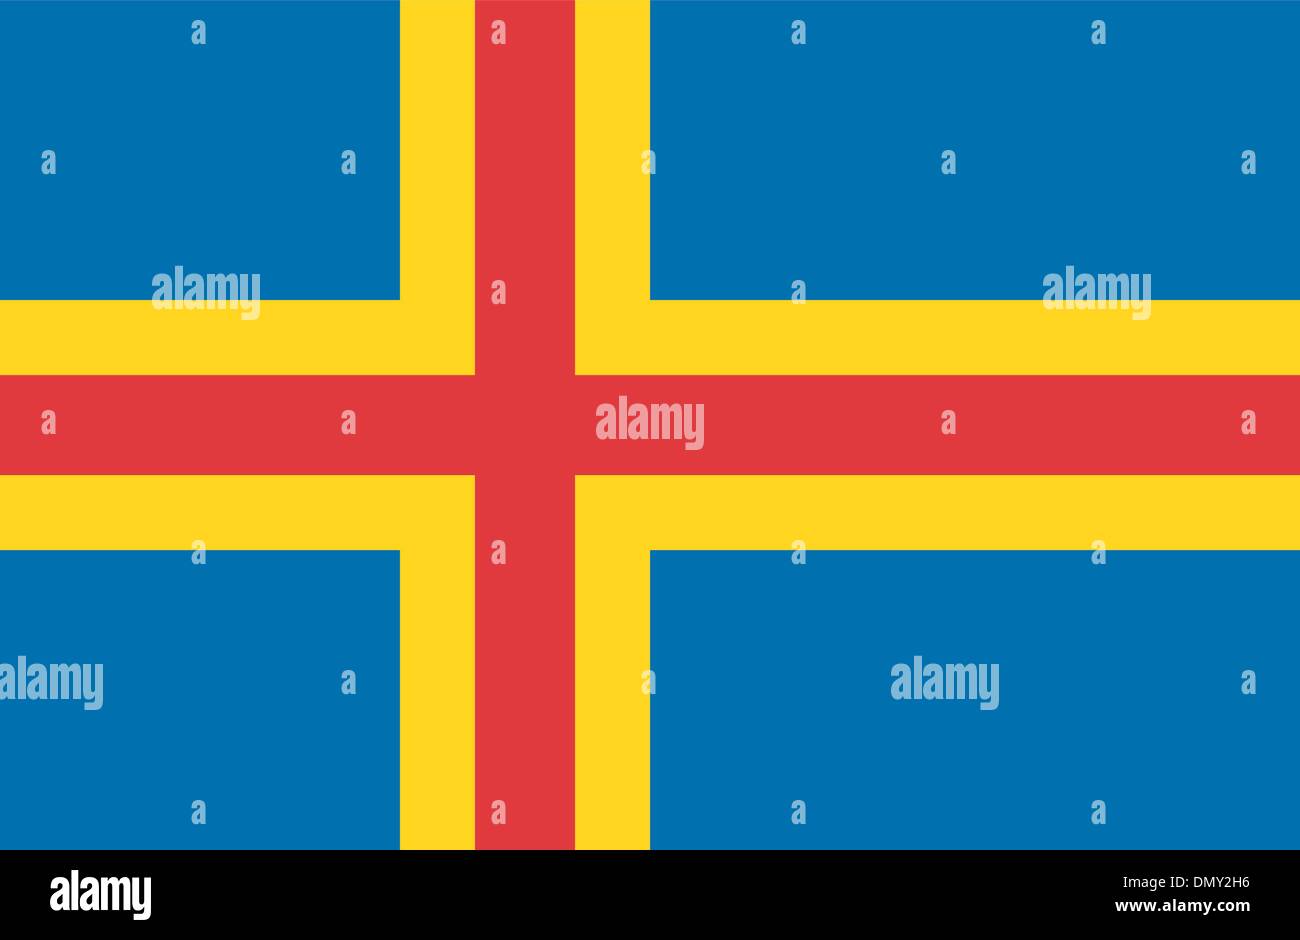 Aland islands flag Stock Vector